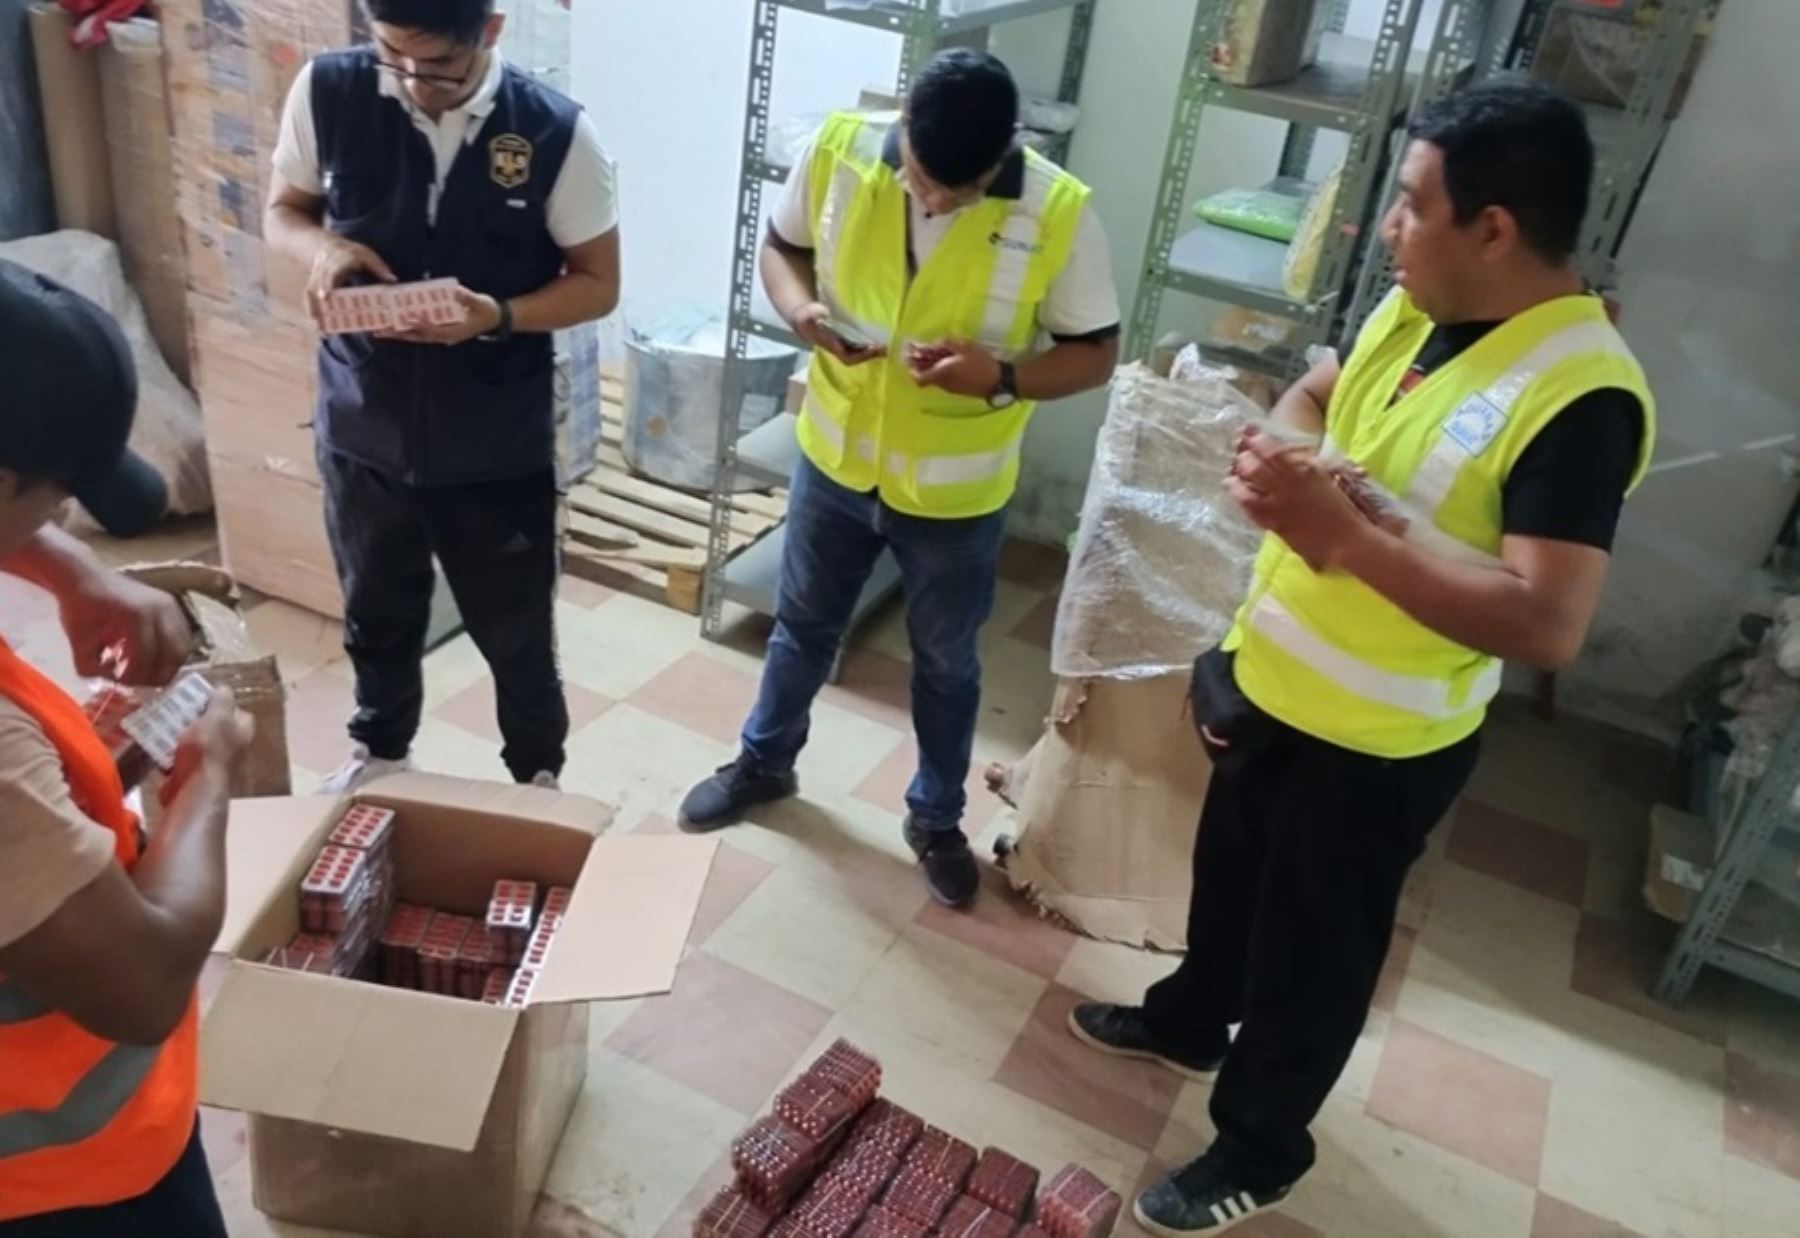 Como resultado de acciones de control efectuadas de enero a marzo de este año, la Superintendencia Nacional de Aduanas y de Administración Tributaria (Sunat) incautó 234,210 unidades de medicamentos de contrabando en Tumbes valorizadas en más de medio millón de soles.